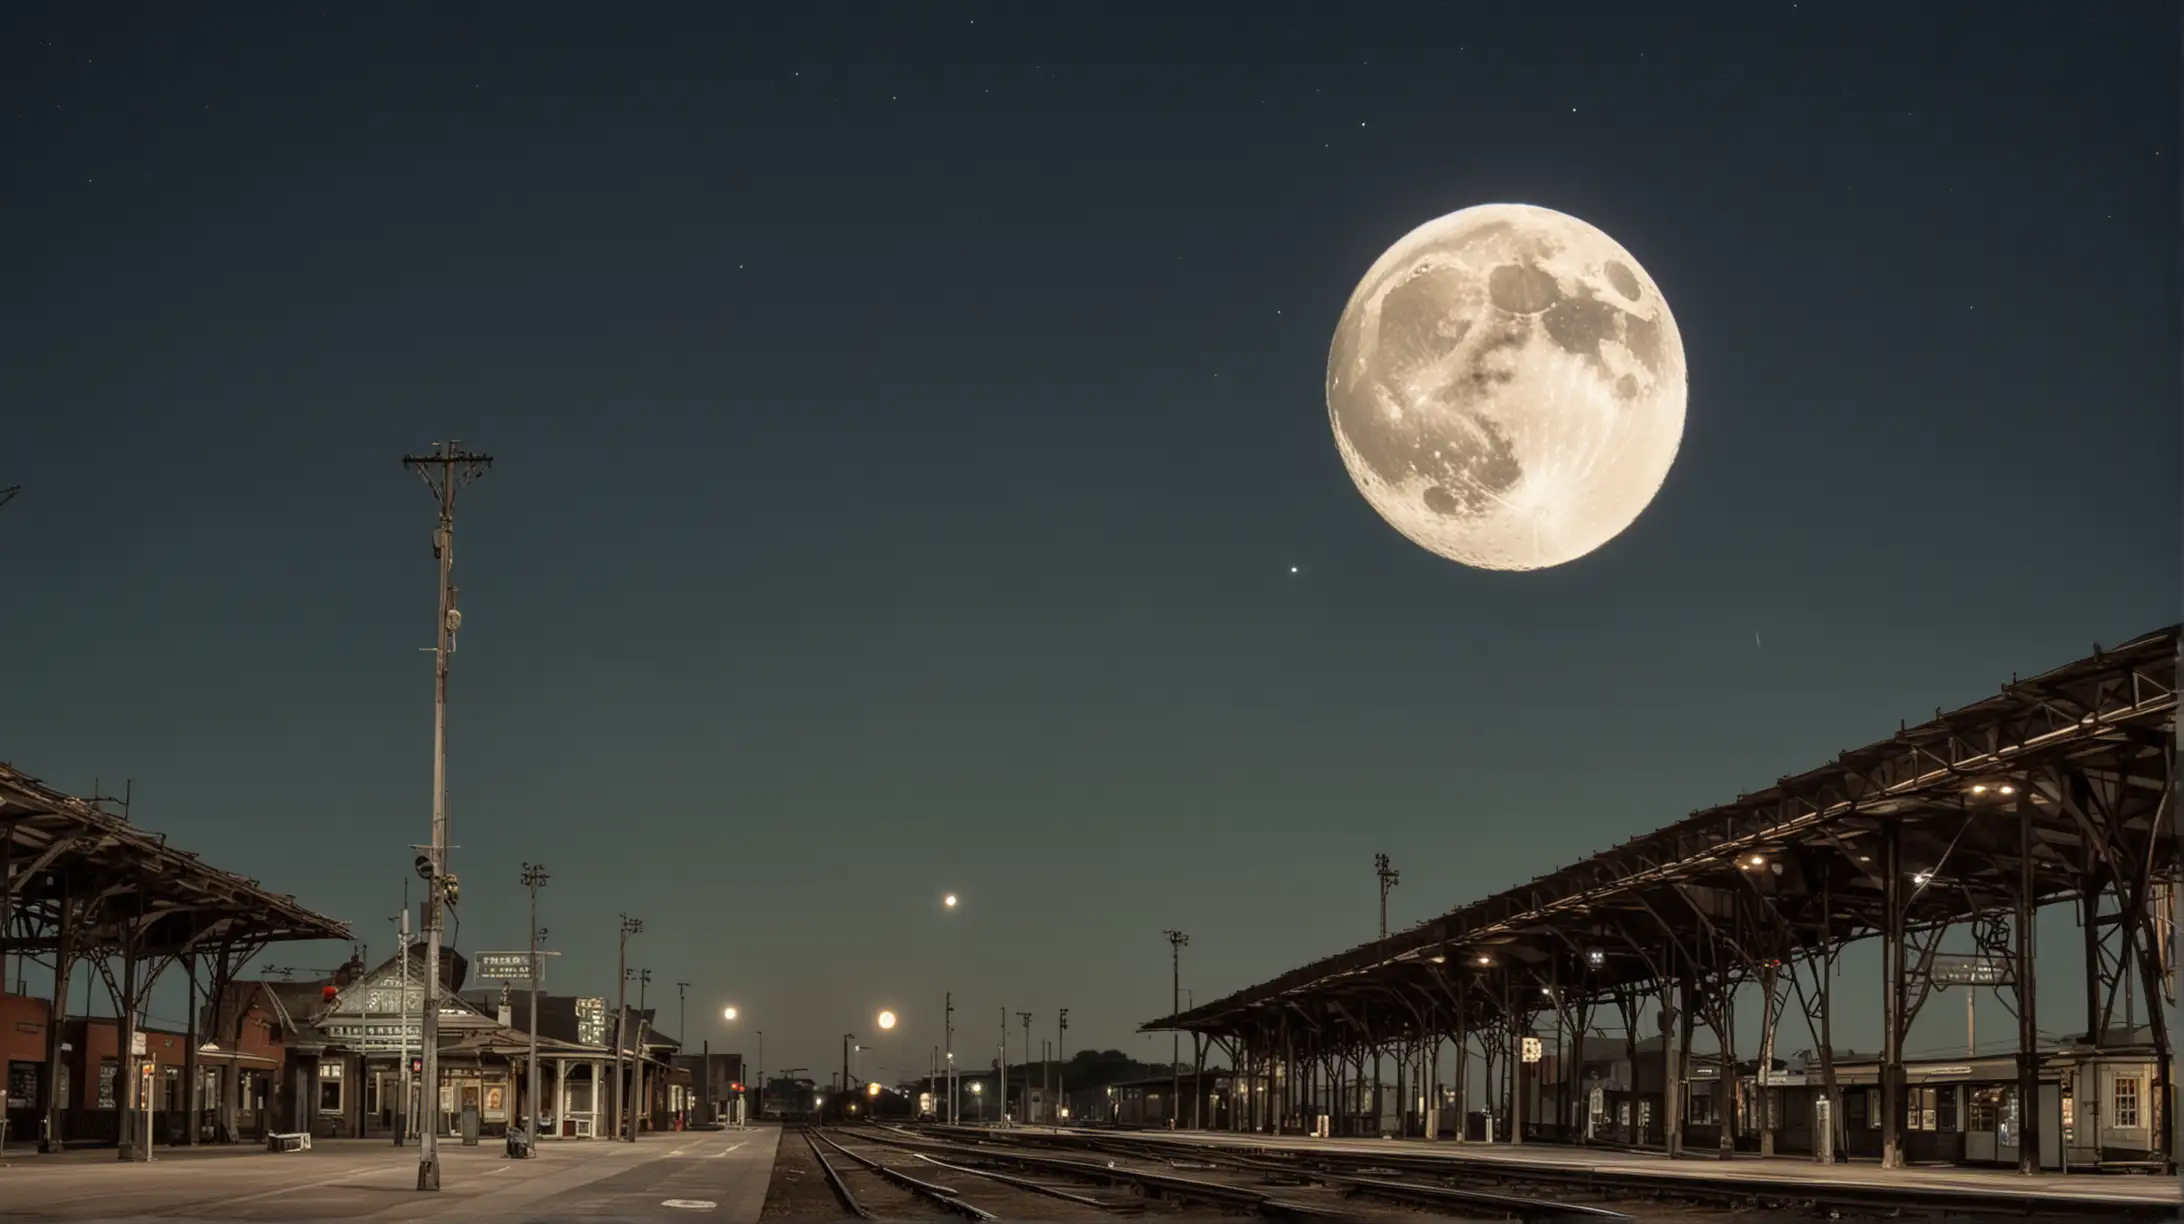 une lune au dessus d'une gare
du début du 20em siècle